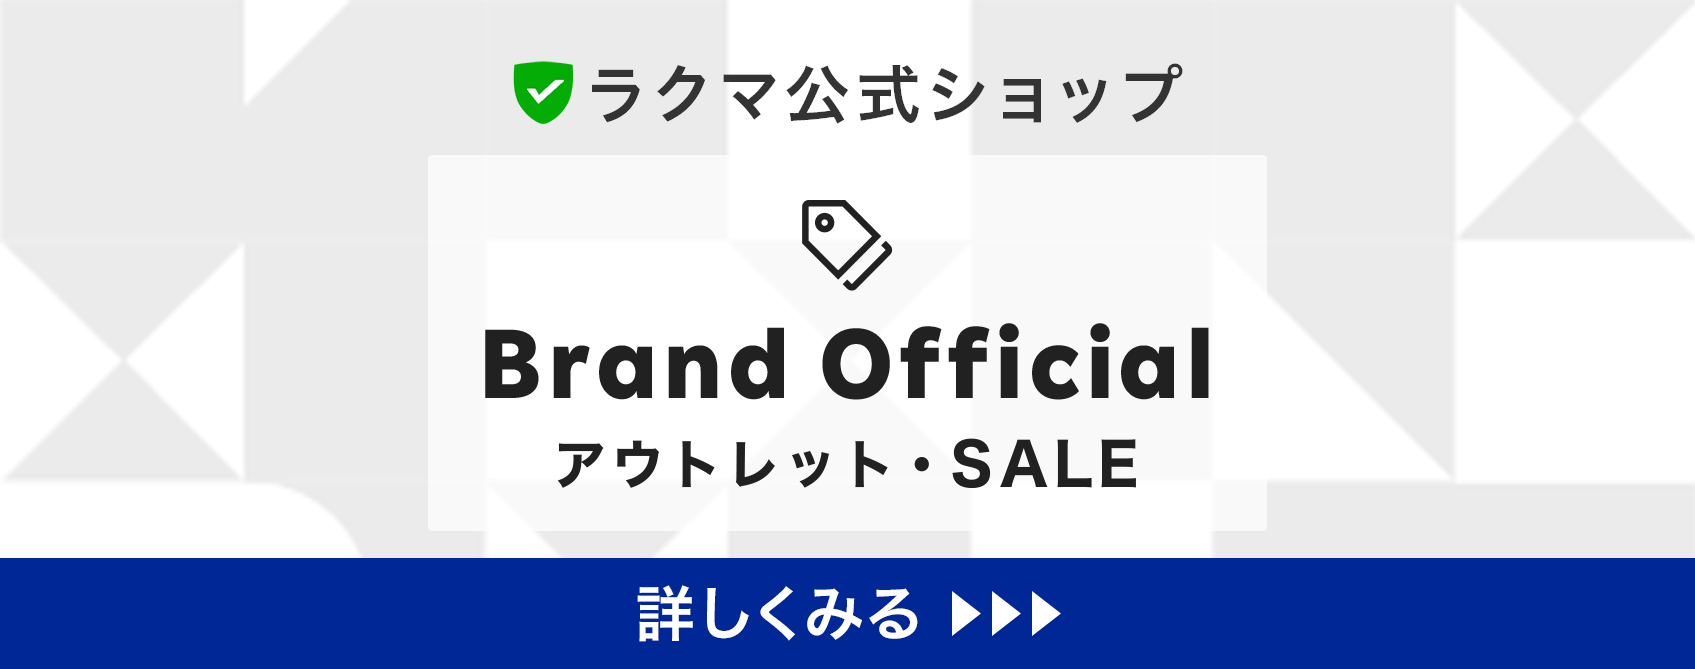 ラクマ公式ショップ Brand Official アウトレット・SALE 詳しくみる